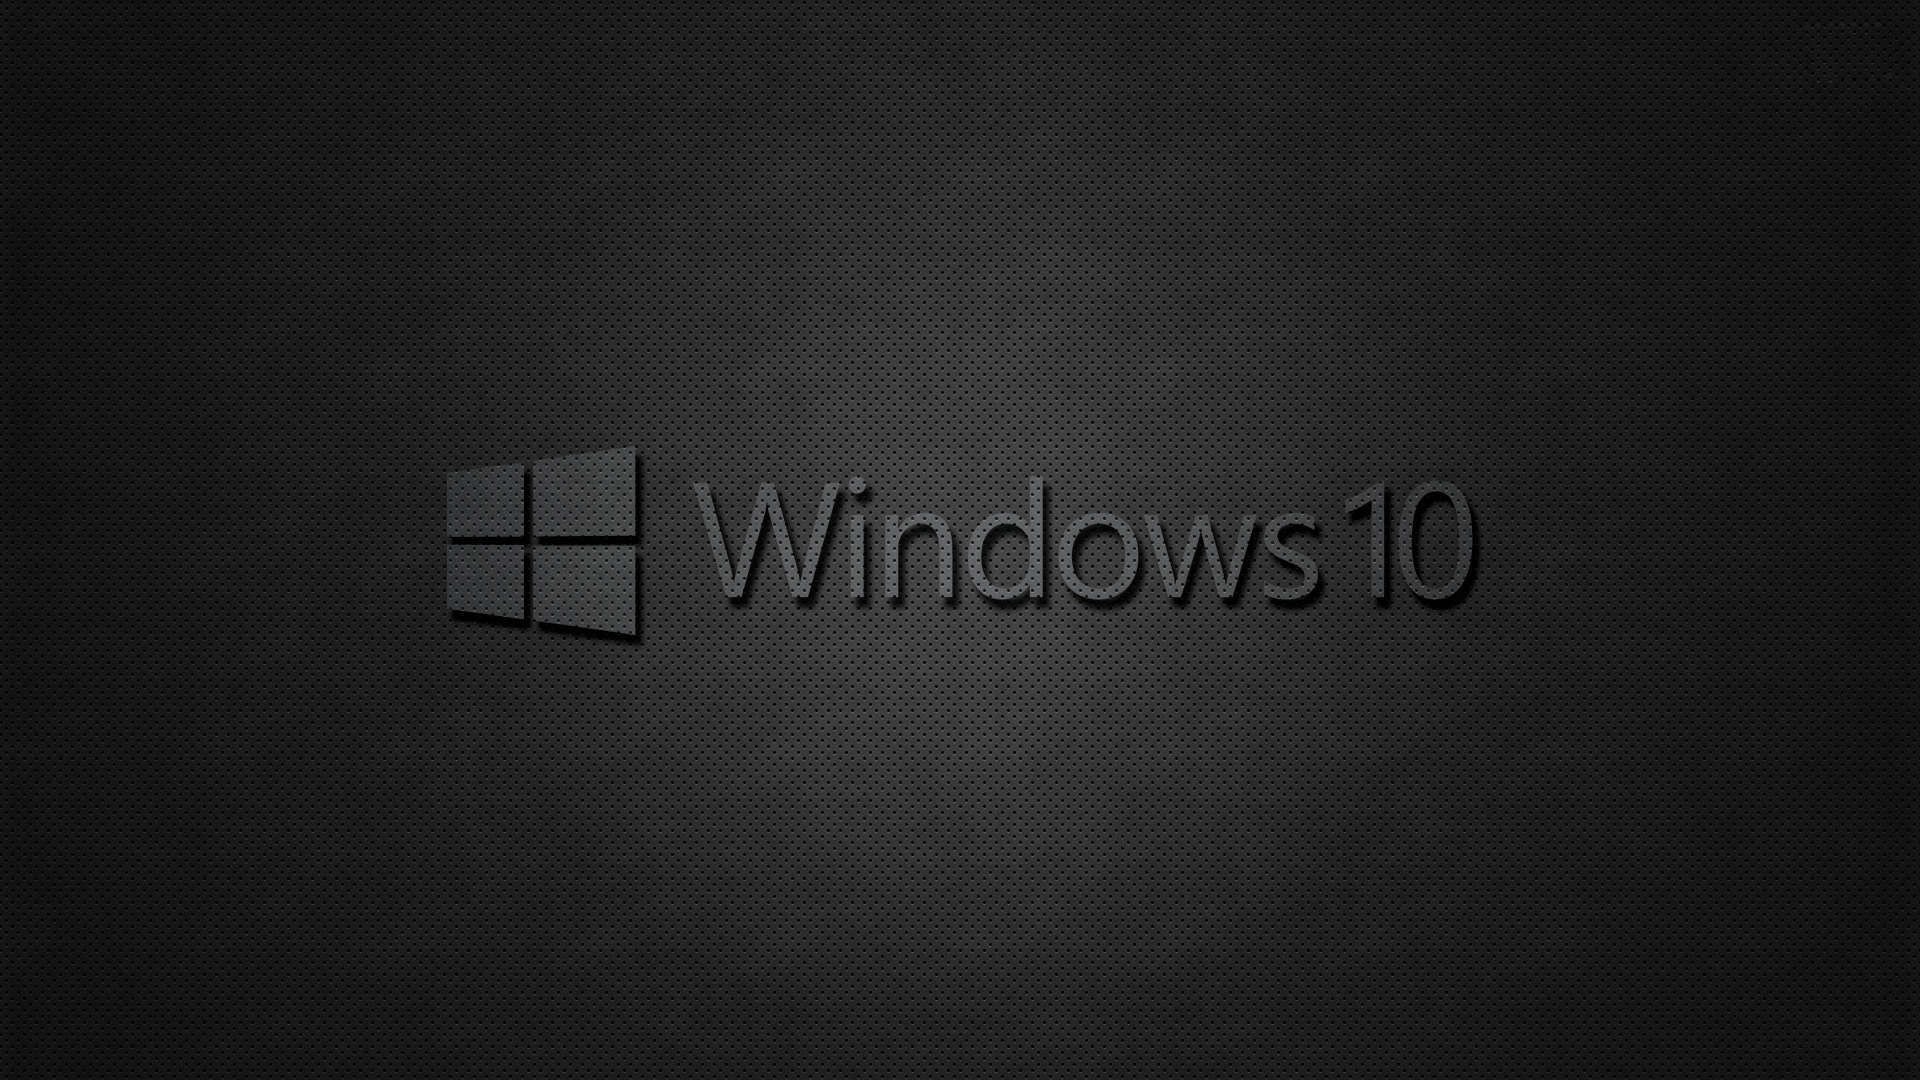 Cập nhật cho desktop của bạn với một hình nền HD đen mới nhất của Windows 10! Mang đến cho bạn sự nổi bật và tinh tế trên desktop của bạn, hình nền này là một lựa chọn tuyệt vời. Bên cạnh đó, bạn hoàn toàn có thể tải miễn phí hình nền này ngay lập tức!